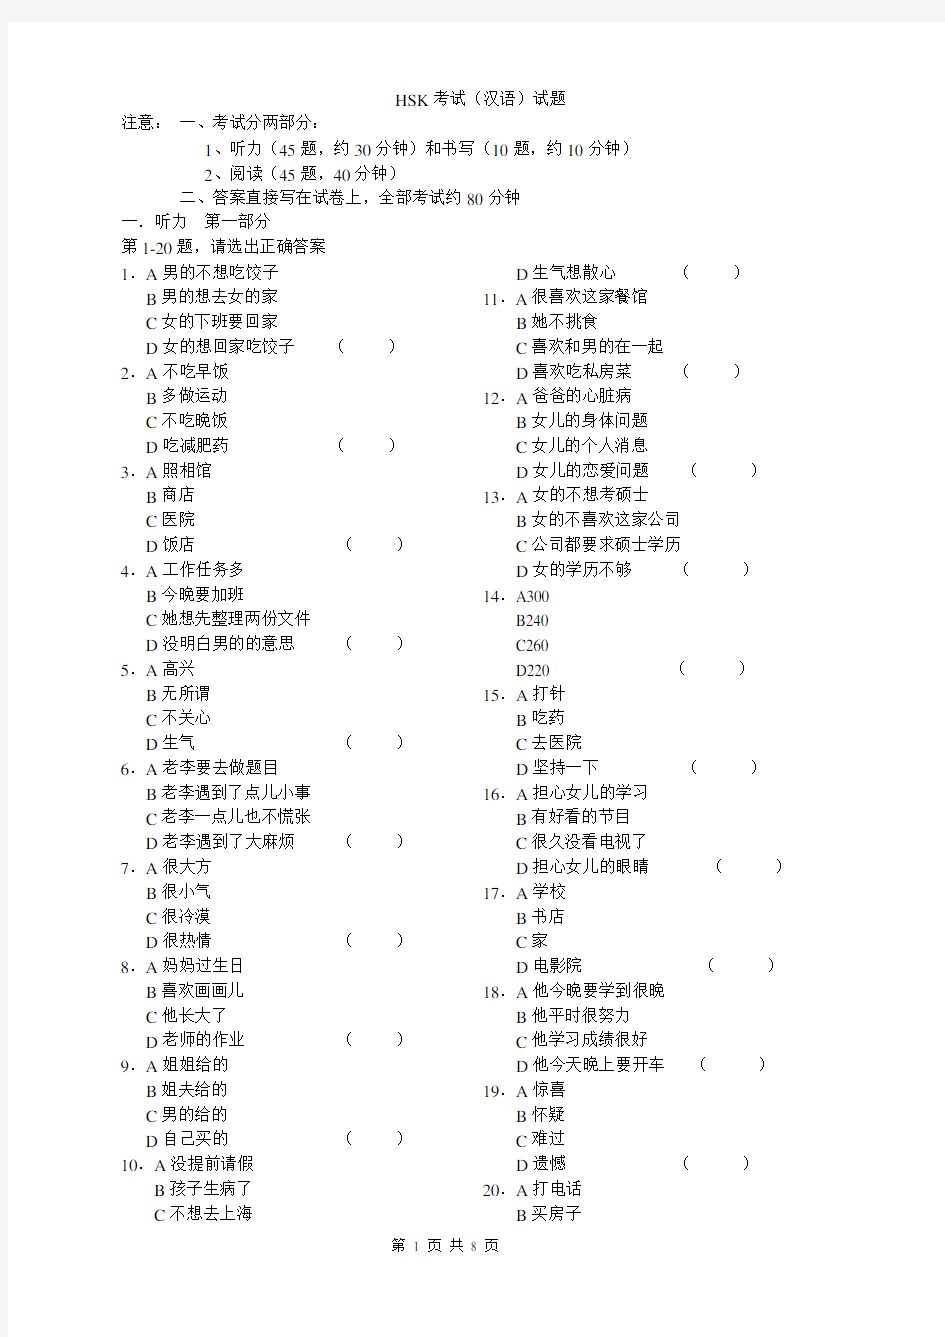 HSK 汉语水平考试 5级 真题